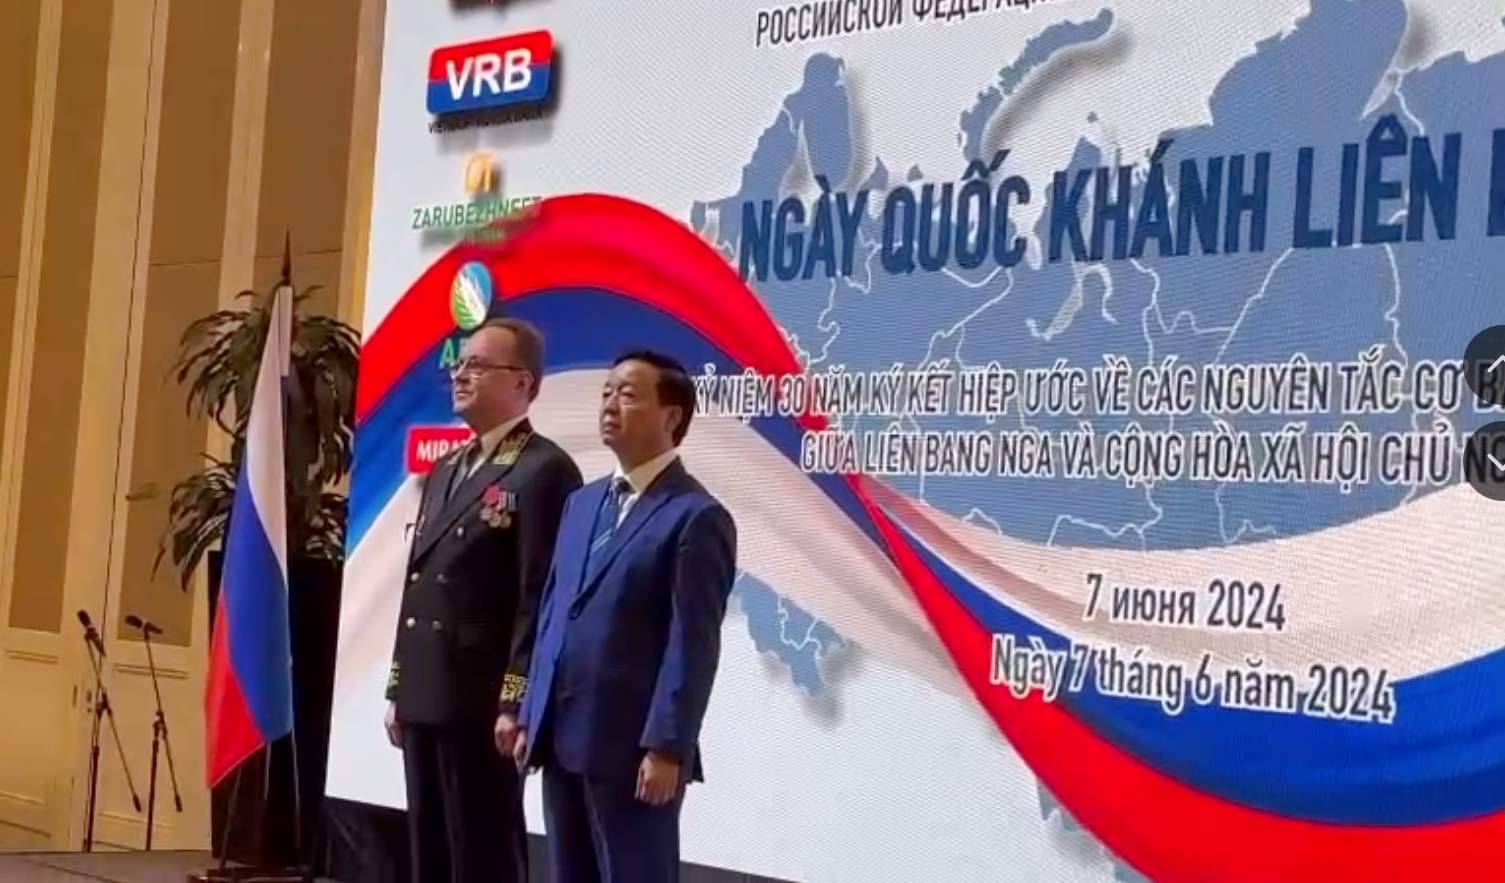 Quan hệ Việt - Nga cần không ngừng được nuôi dưỡng, tiếp nối và trao truyền- Ảnh 1.